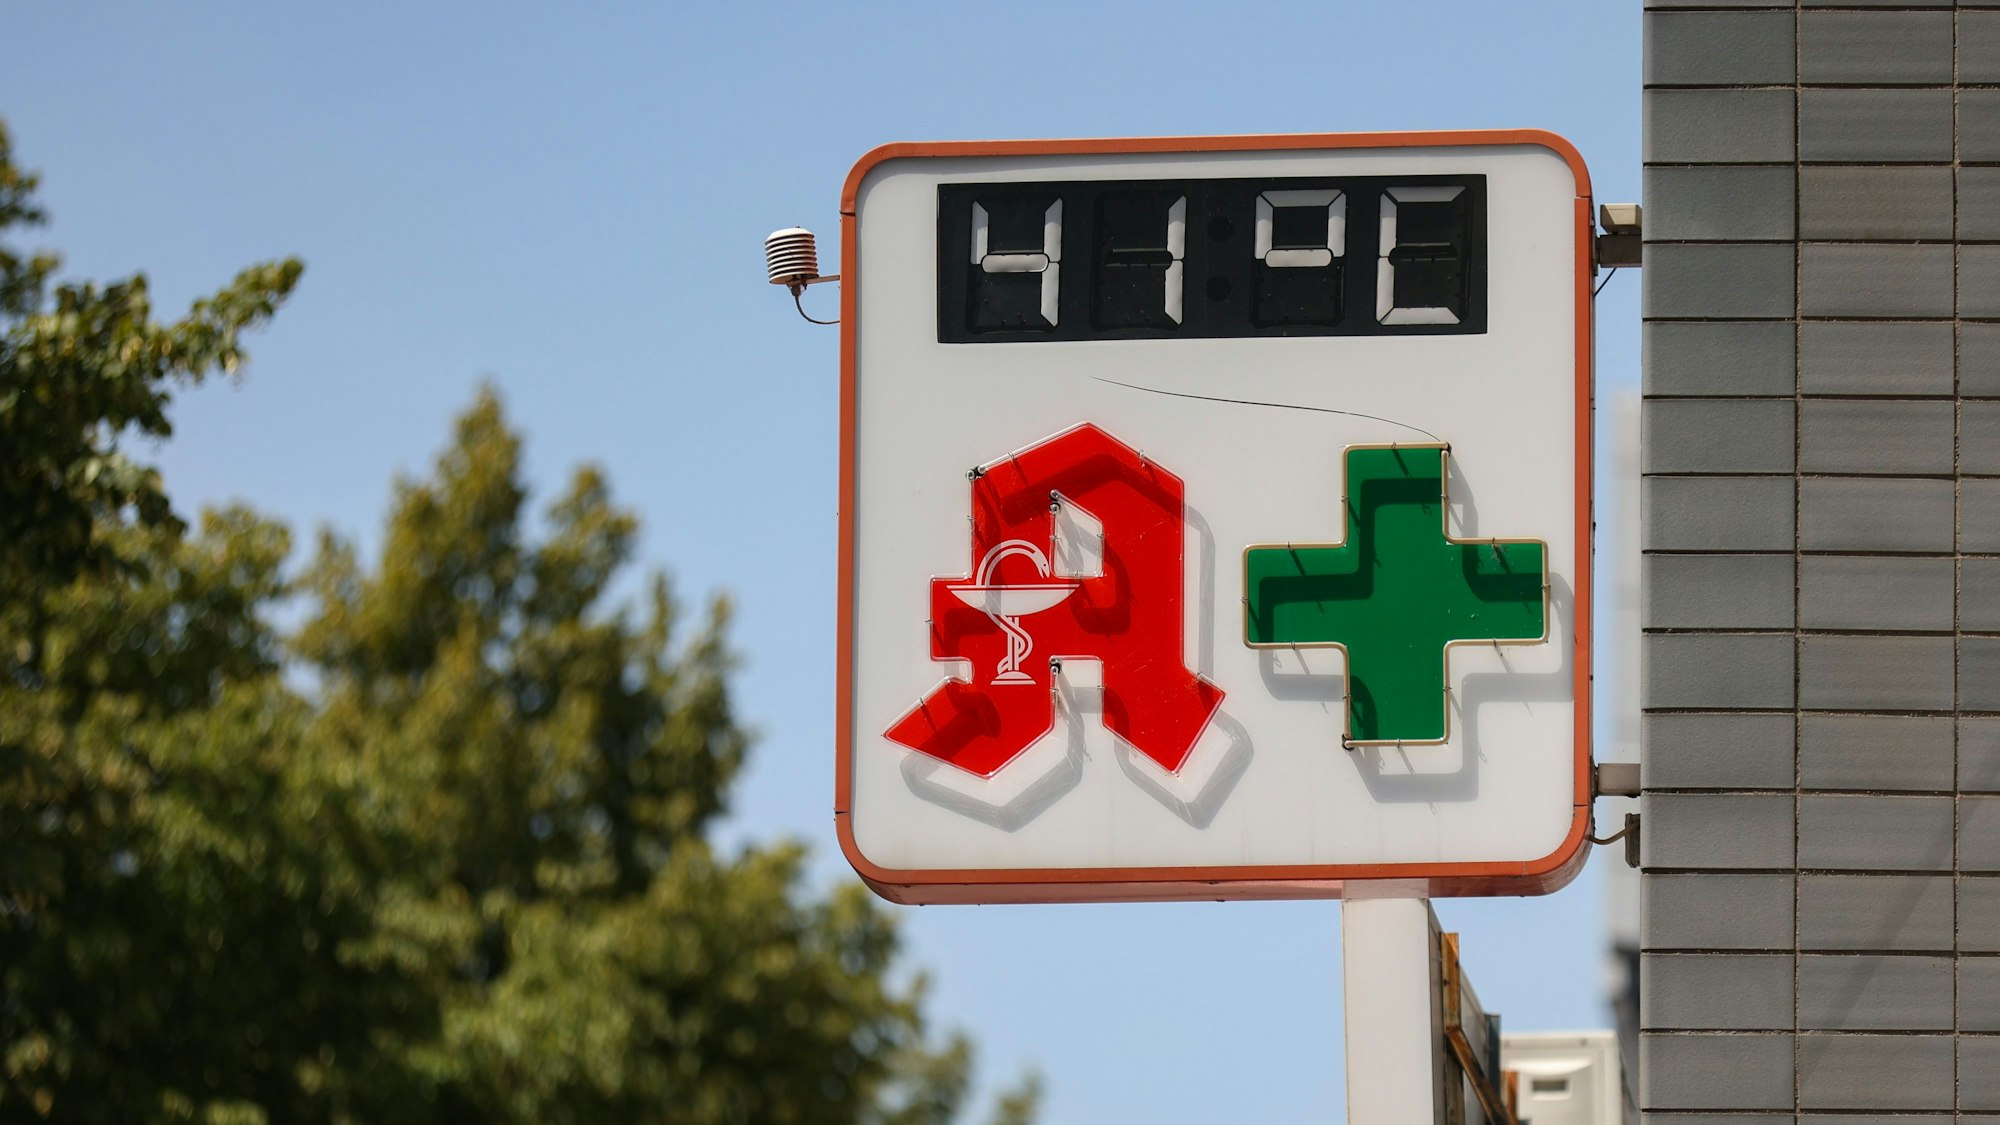 Ein Thermometer auf der Venloer Straße zeigt 41 Grad an.

